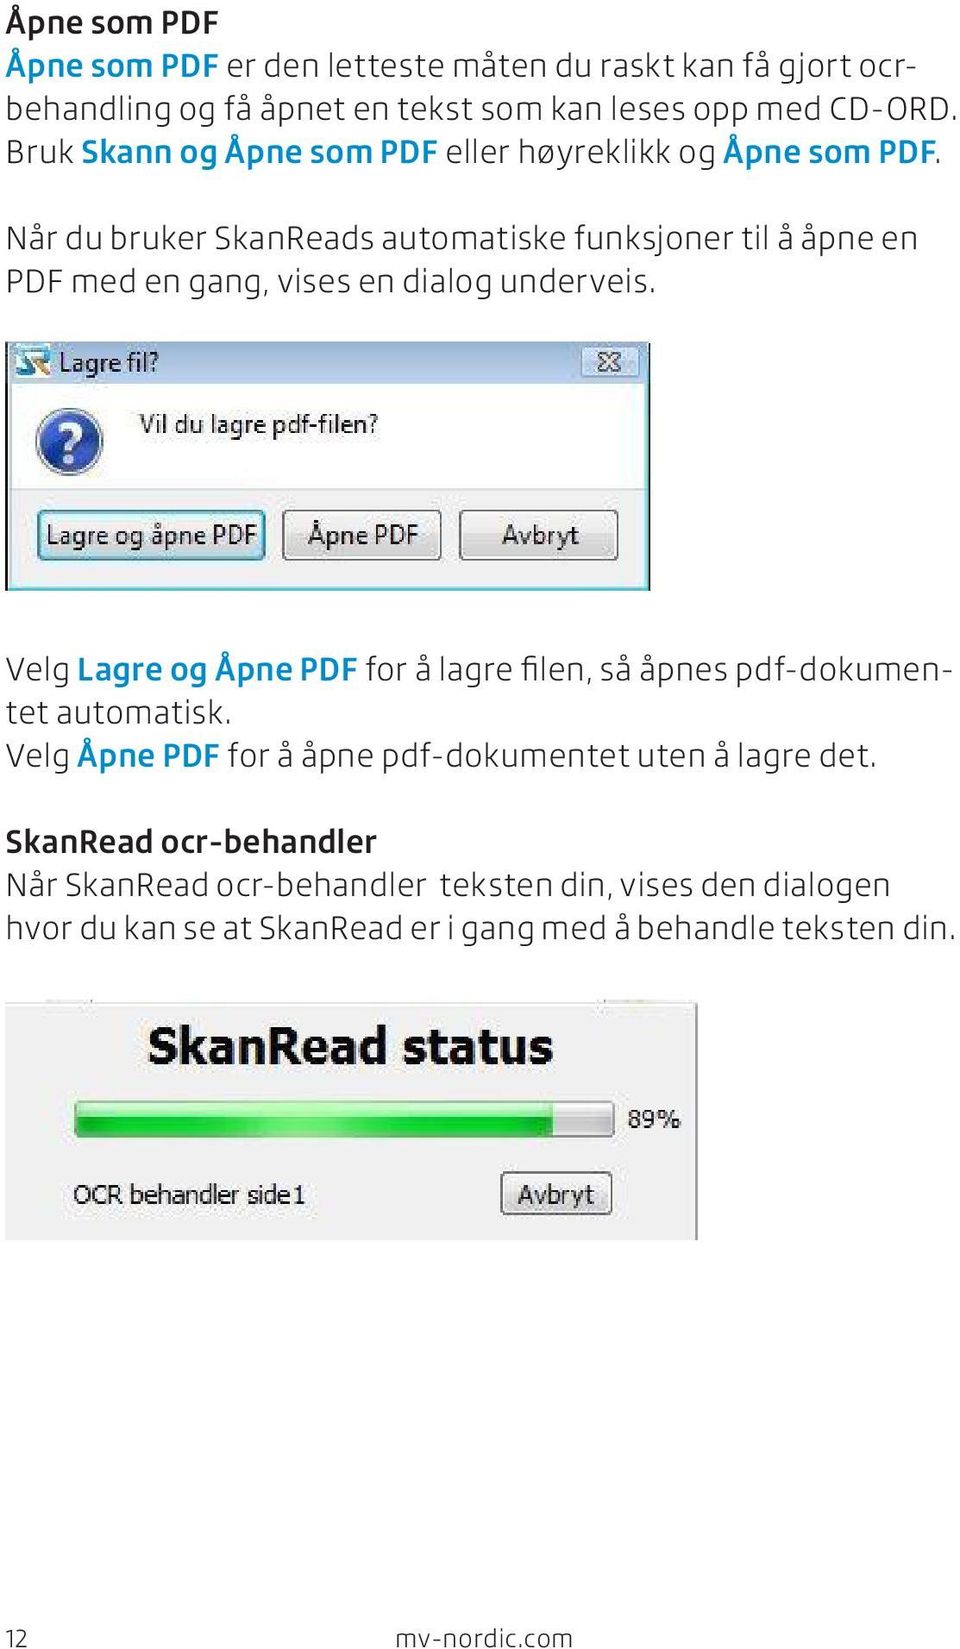 Når du bruker SkanReads automatiske funksjoner til å åpne en PDF med en gang, vises en dialog underveis.